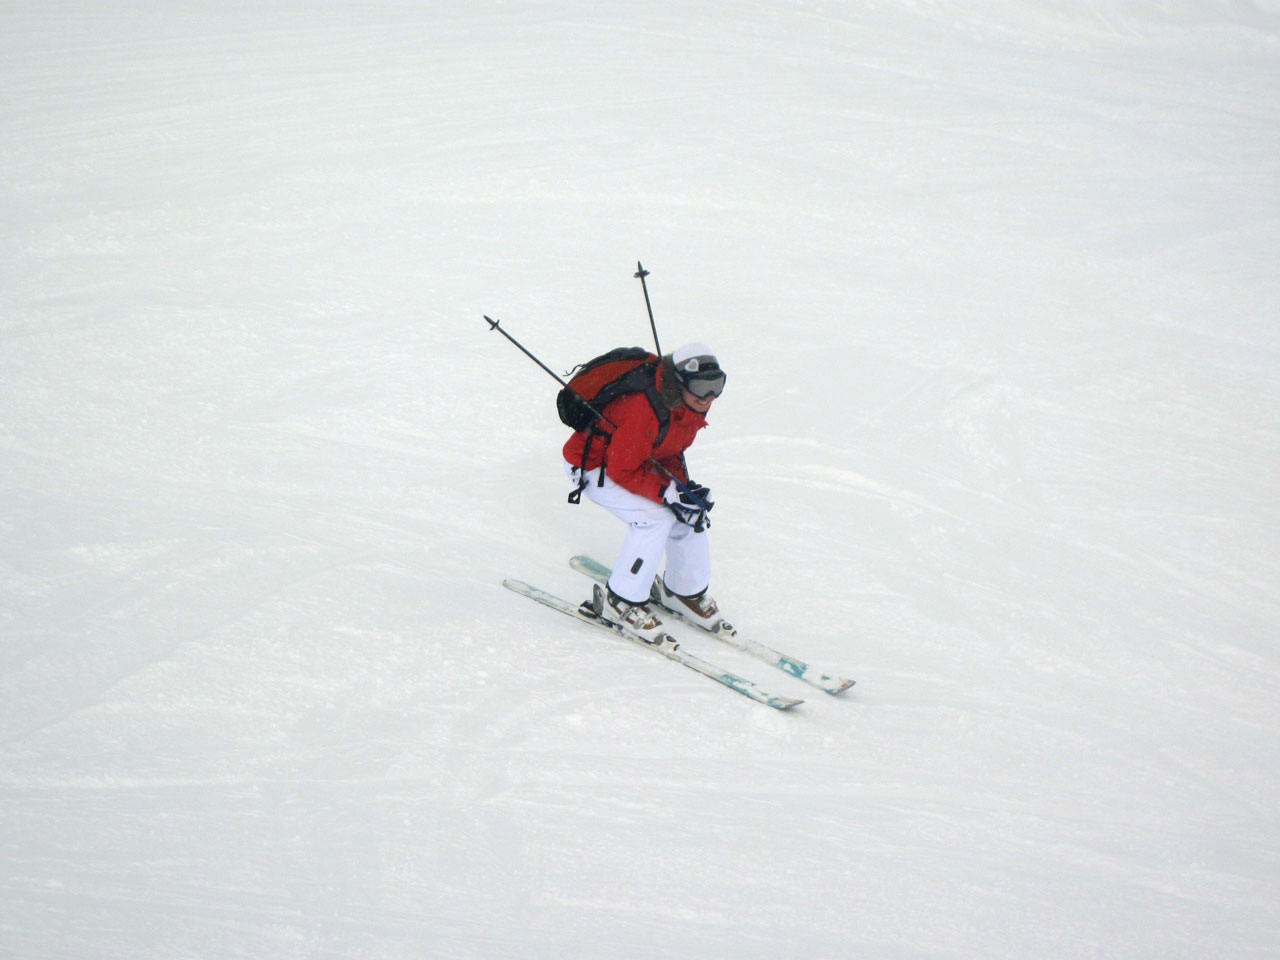 Skifahren auf Piste